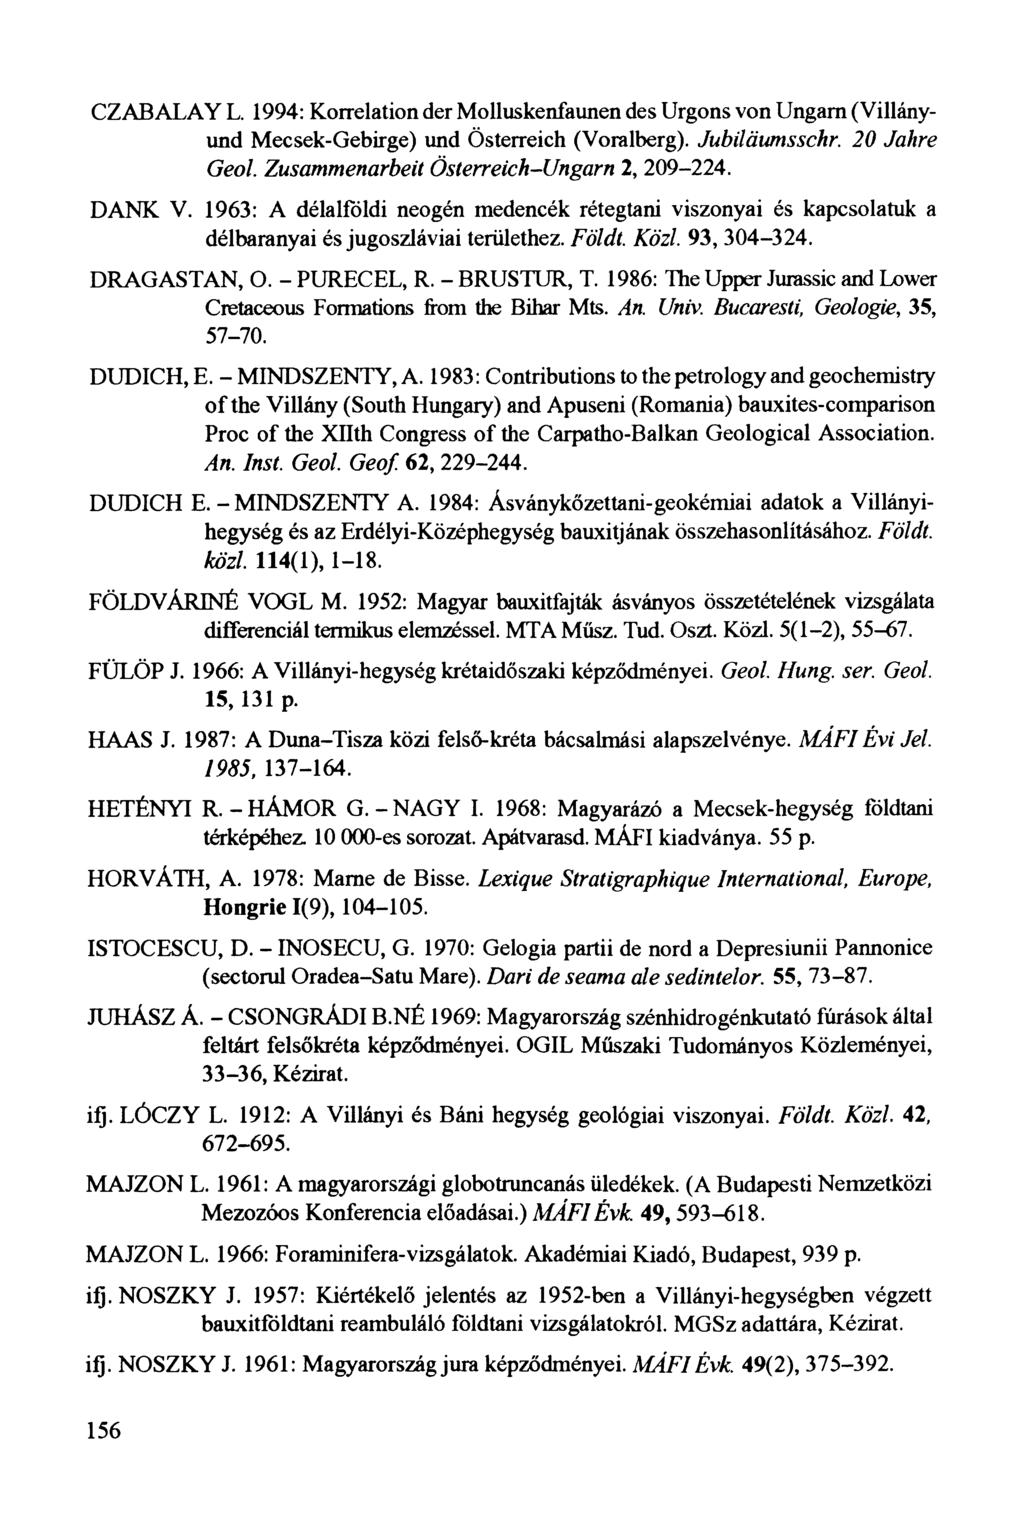 CZABALAY L. 1994: Korrelation der Molluskenfaunen des Urgons von Ungarn (Villányund Mecsek-Gebirge) und Österreich (Voralberg). J u b ilä um sschr.